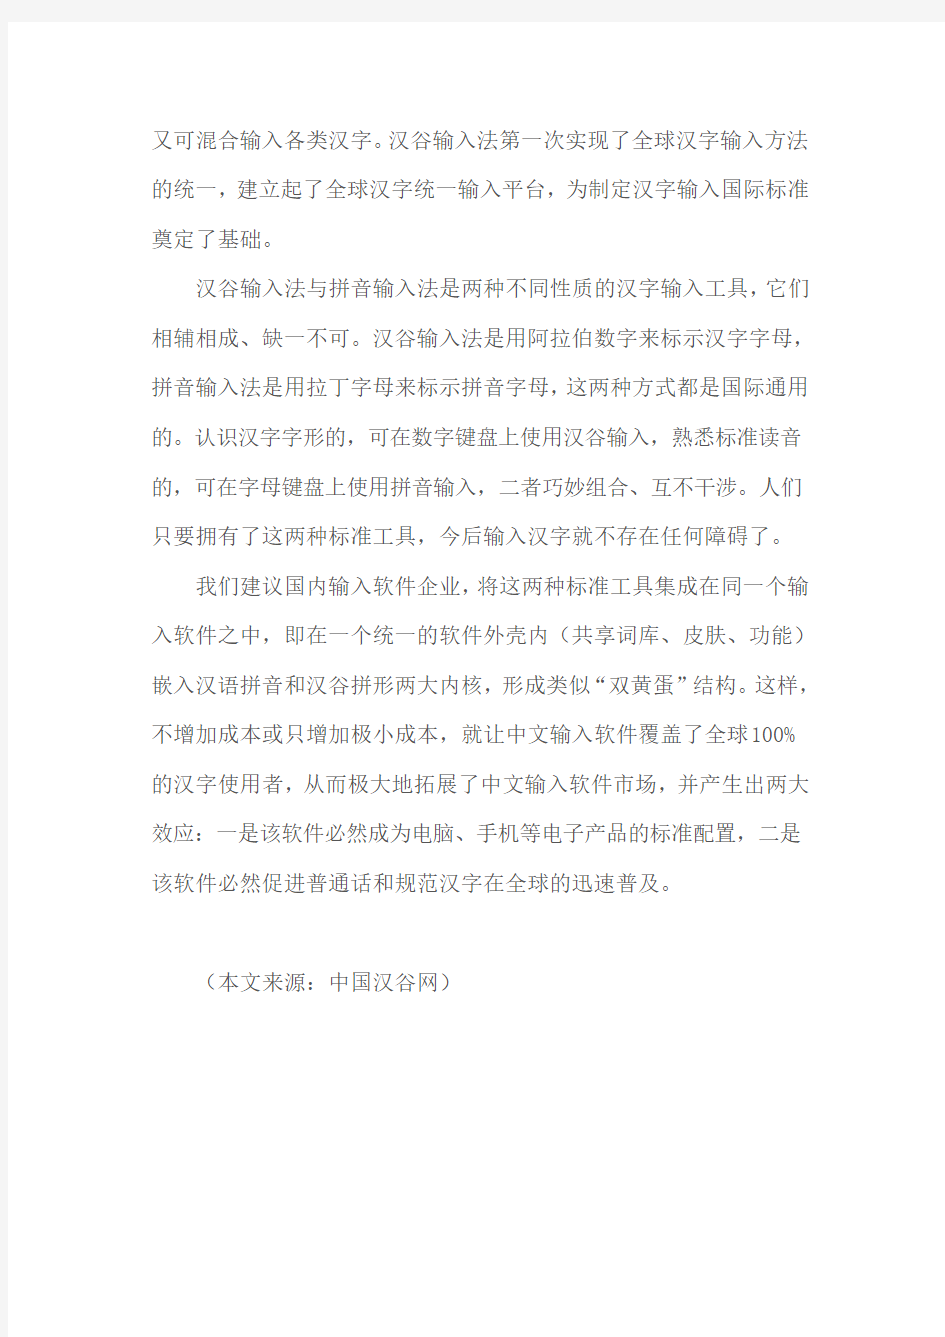 二评汉谷输入法——汉语拼音解决不了全球汉字统一输入问题